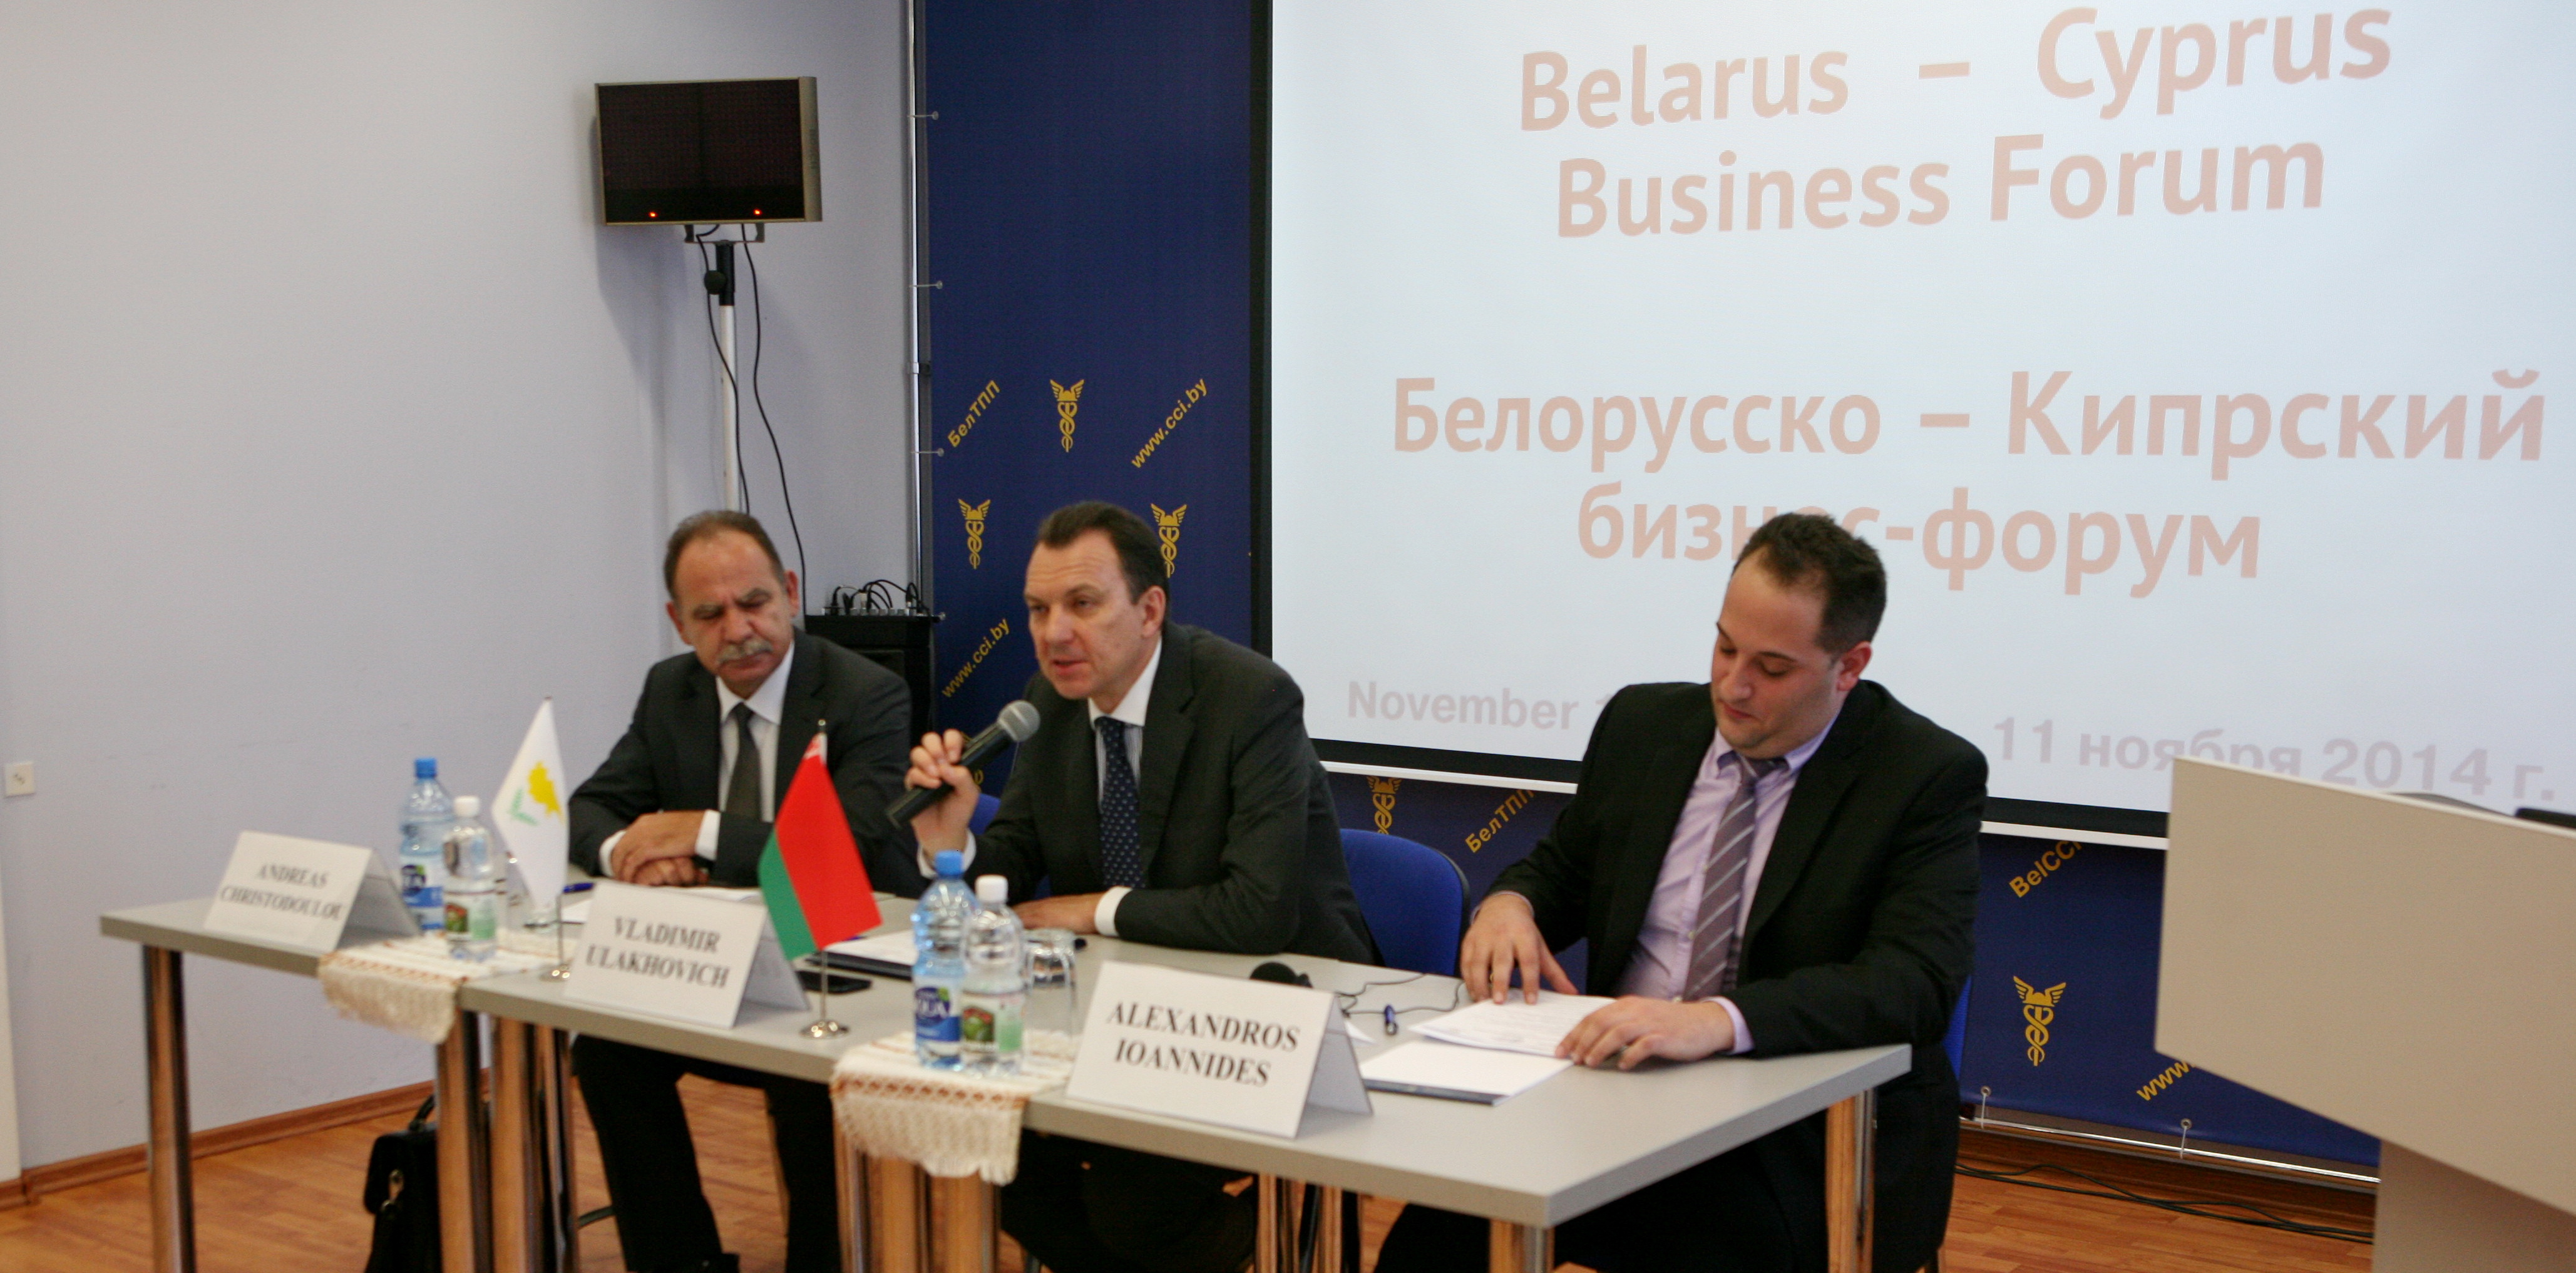 Белорусско-Кипрский бизнес-форум